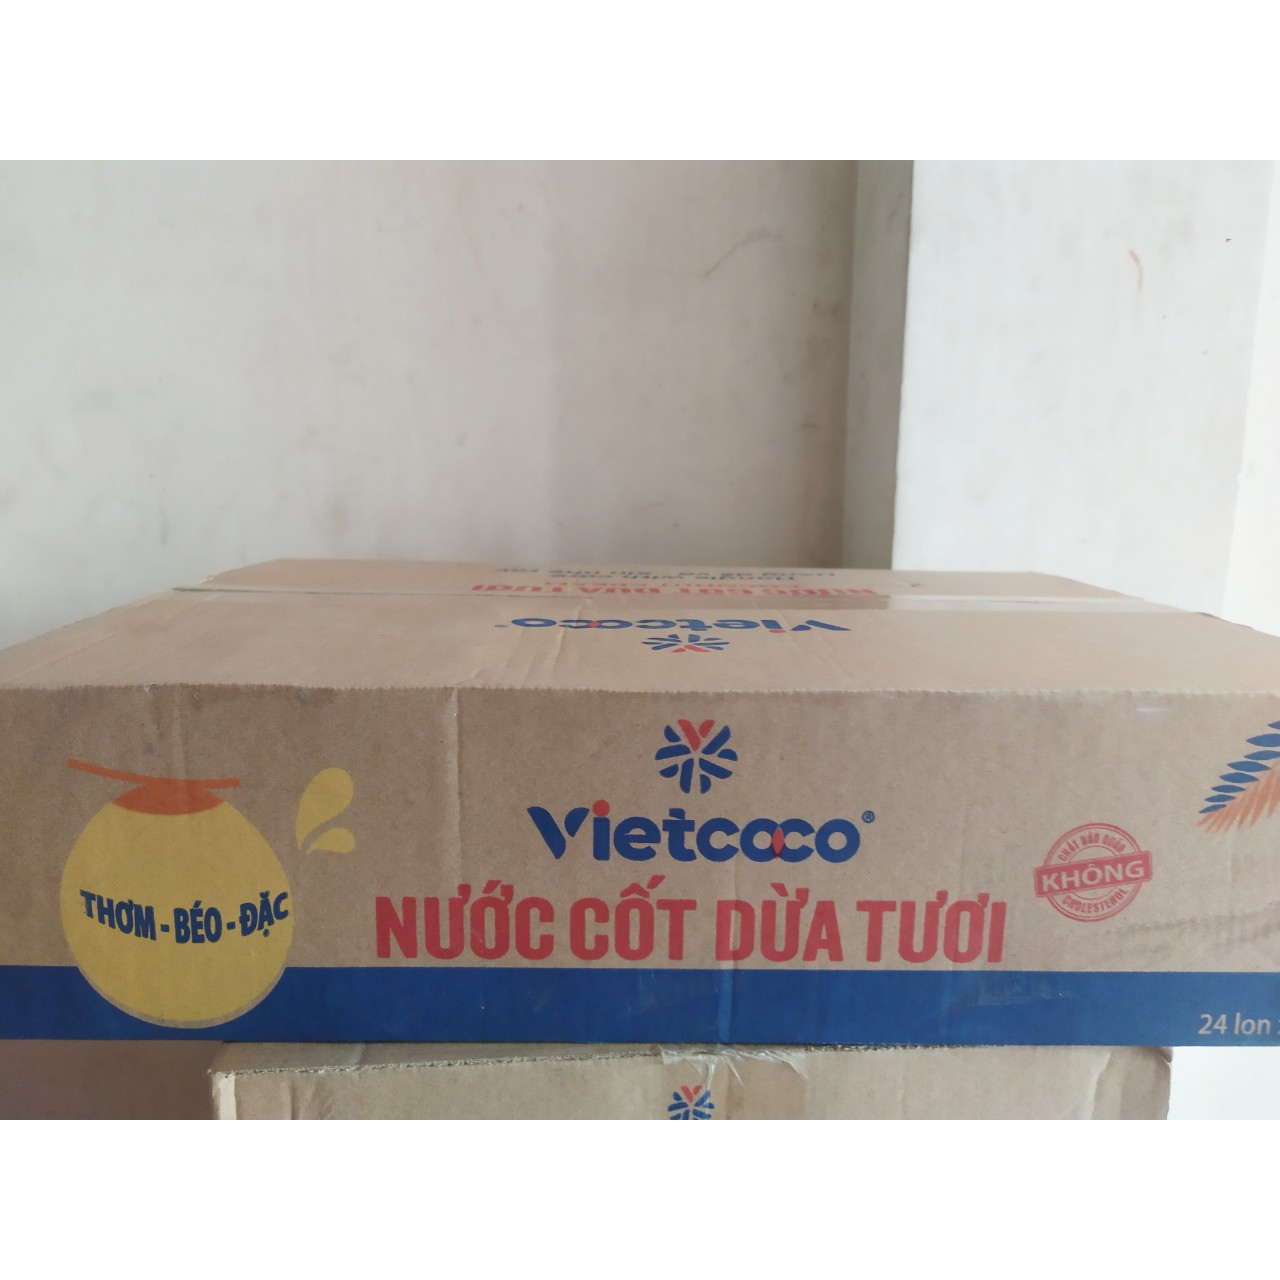 Combo 1 Thùng Nước Cốt Dừa Tươi Vietcoco 24 lon 400g nguyên chất